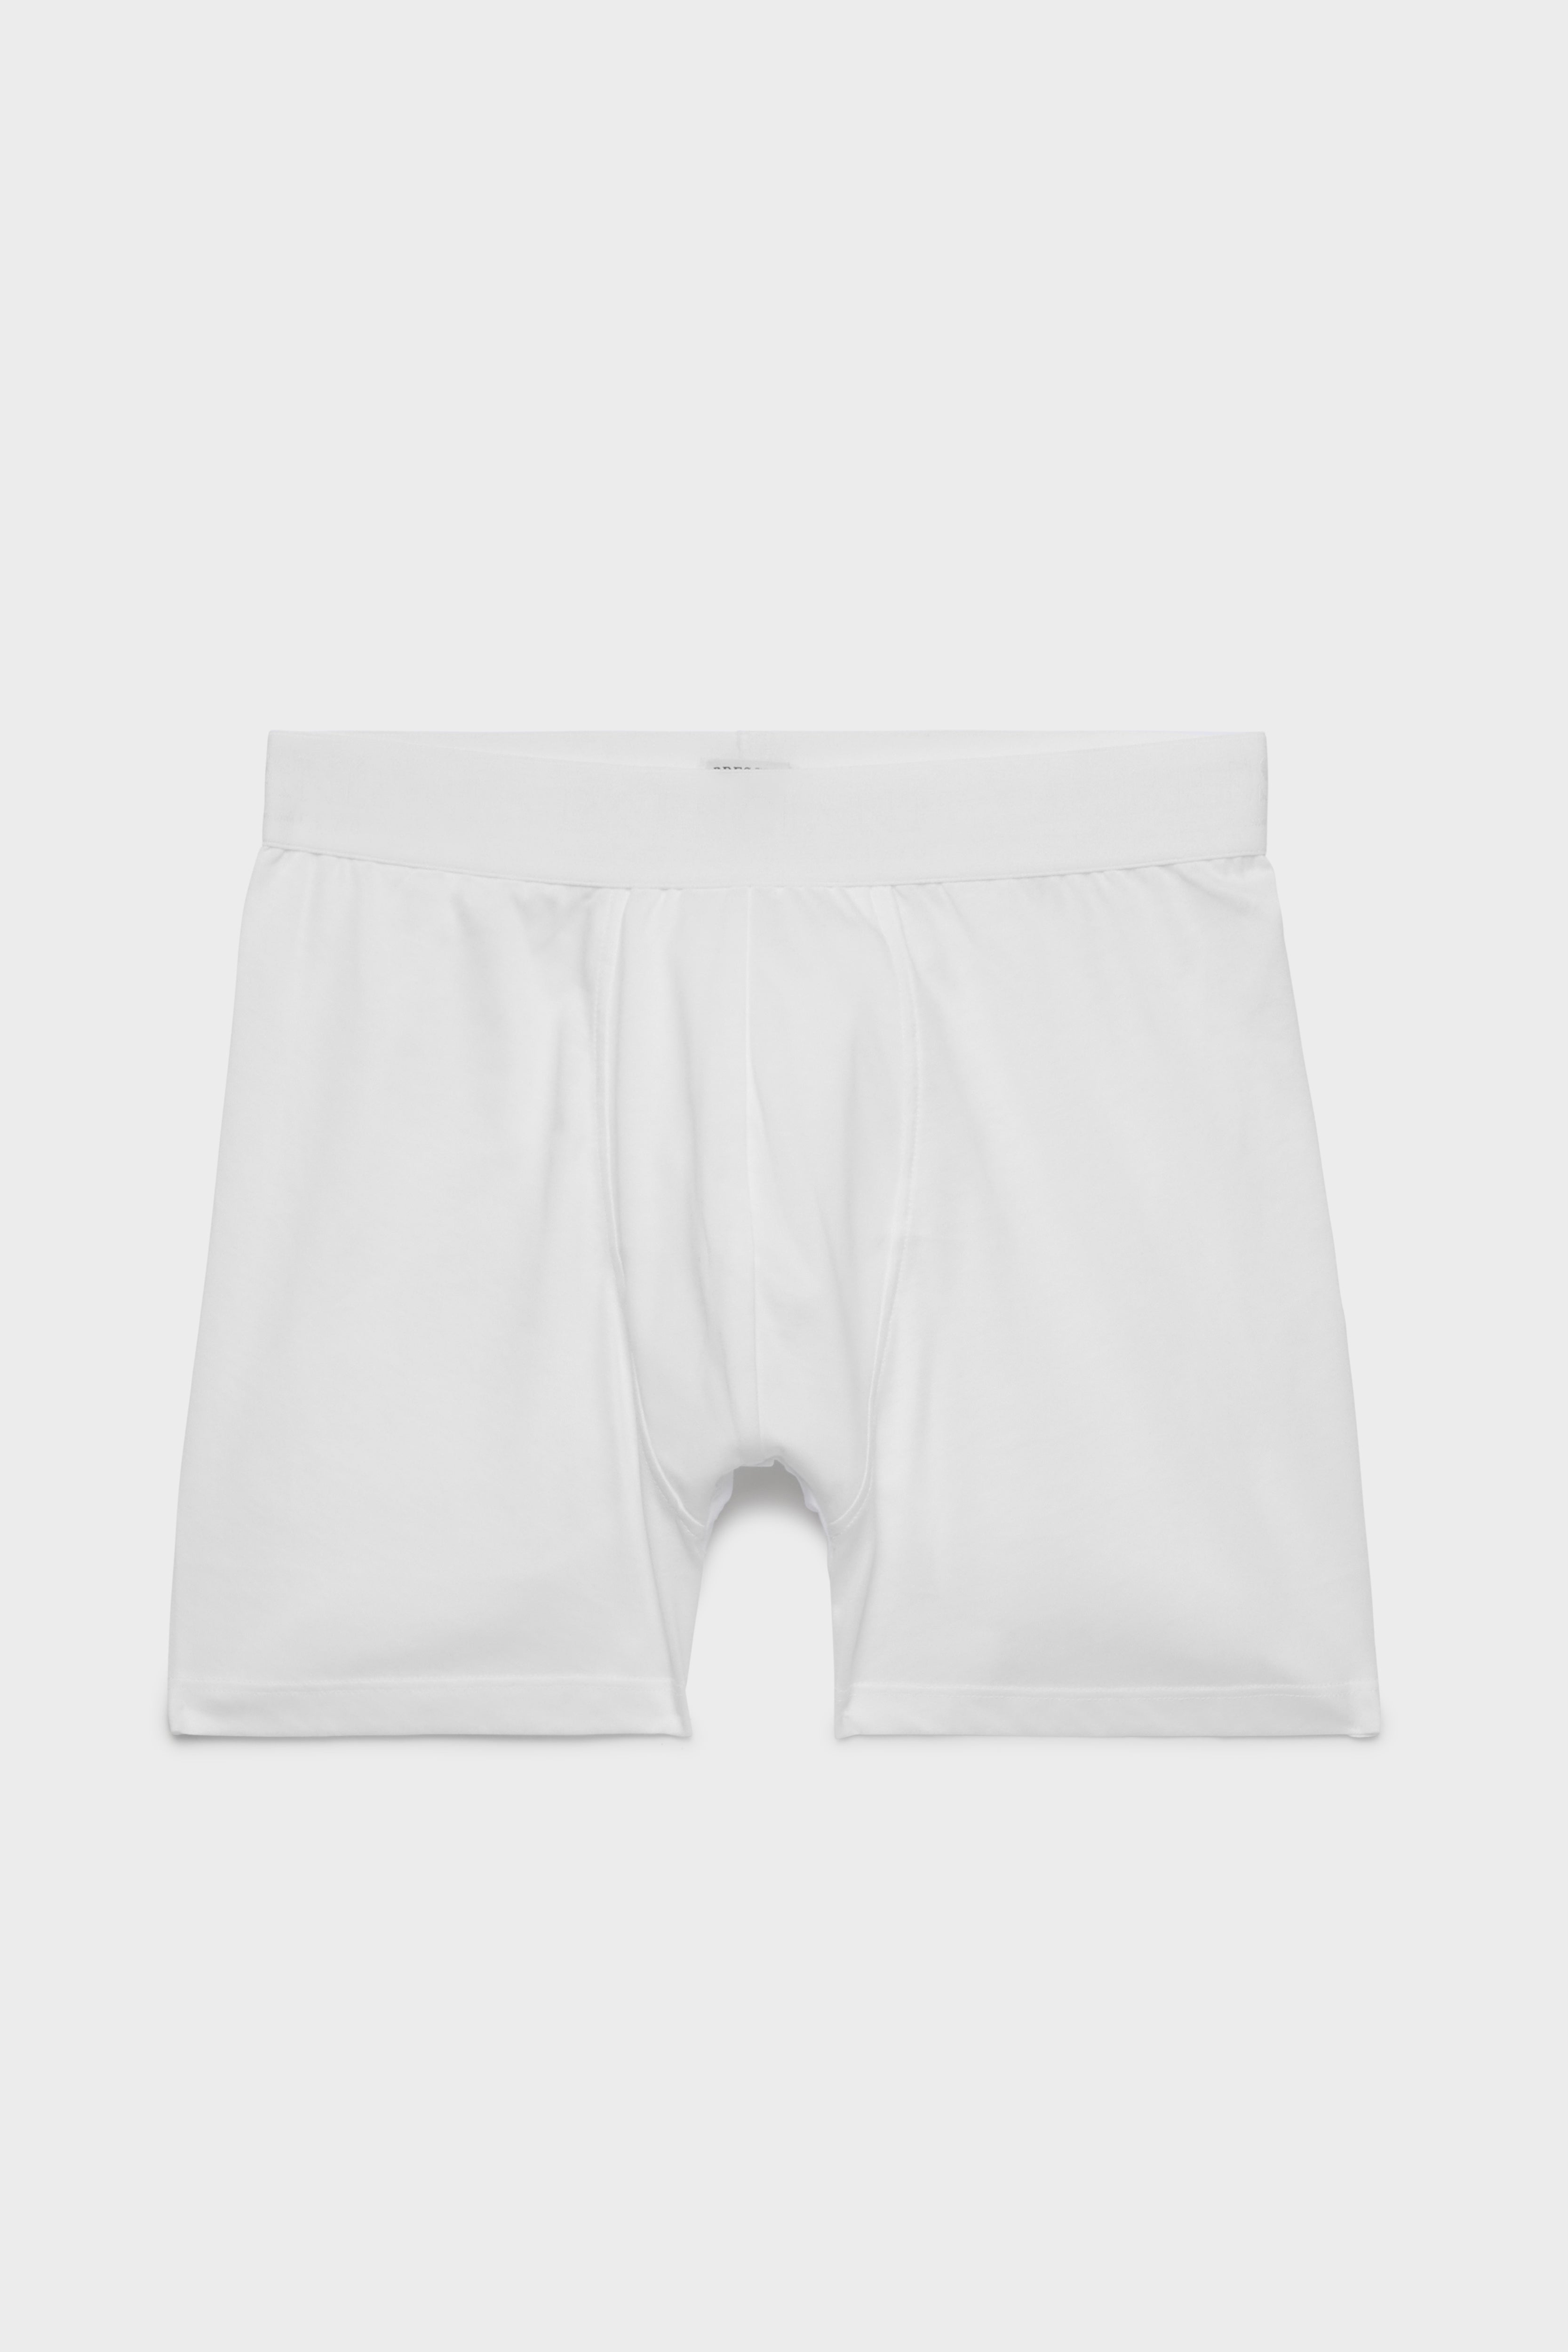 BRESCIANI - men's underwear. Trunks. Cotton. White – Bresciani Shop